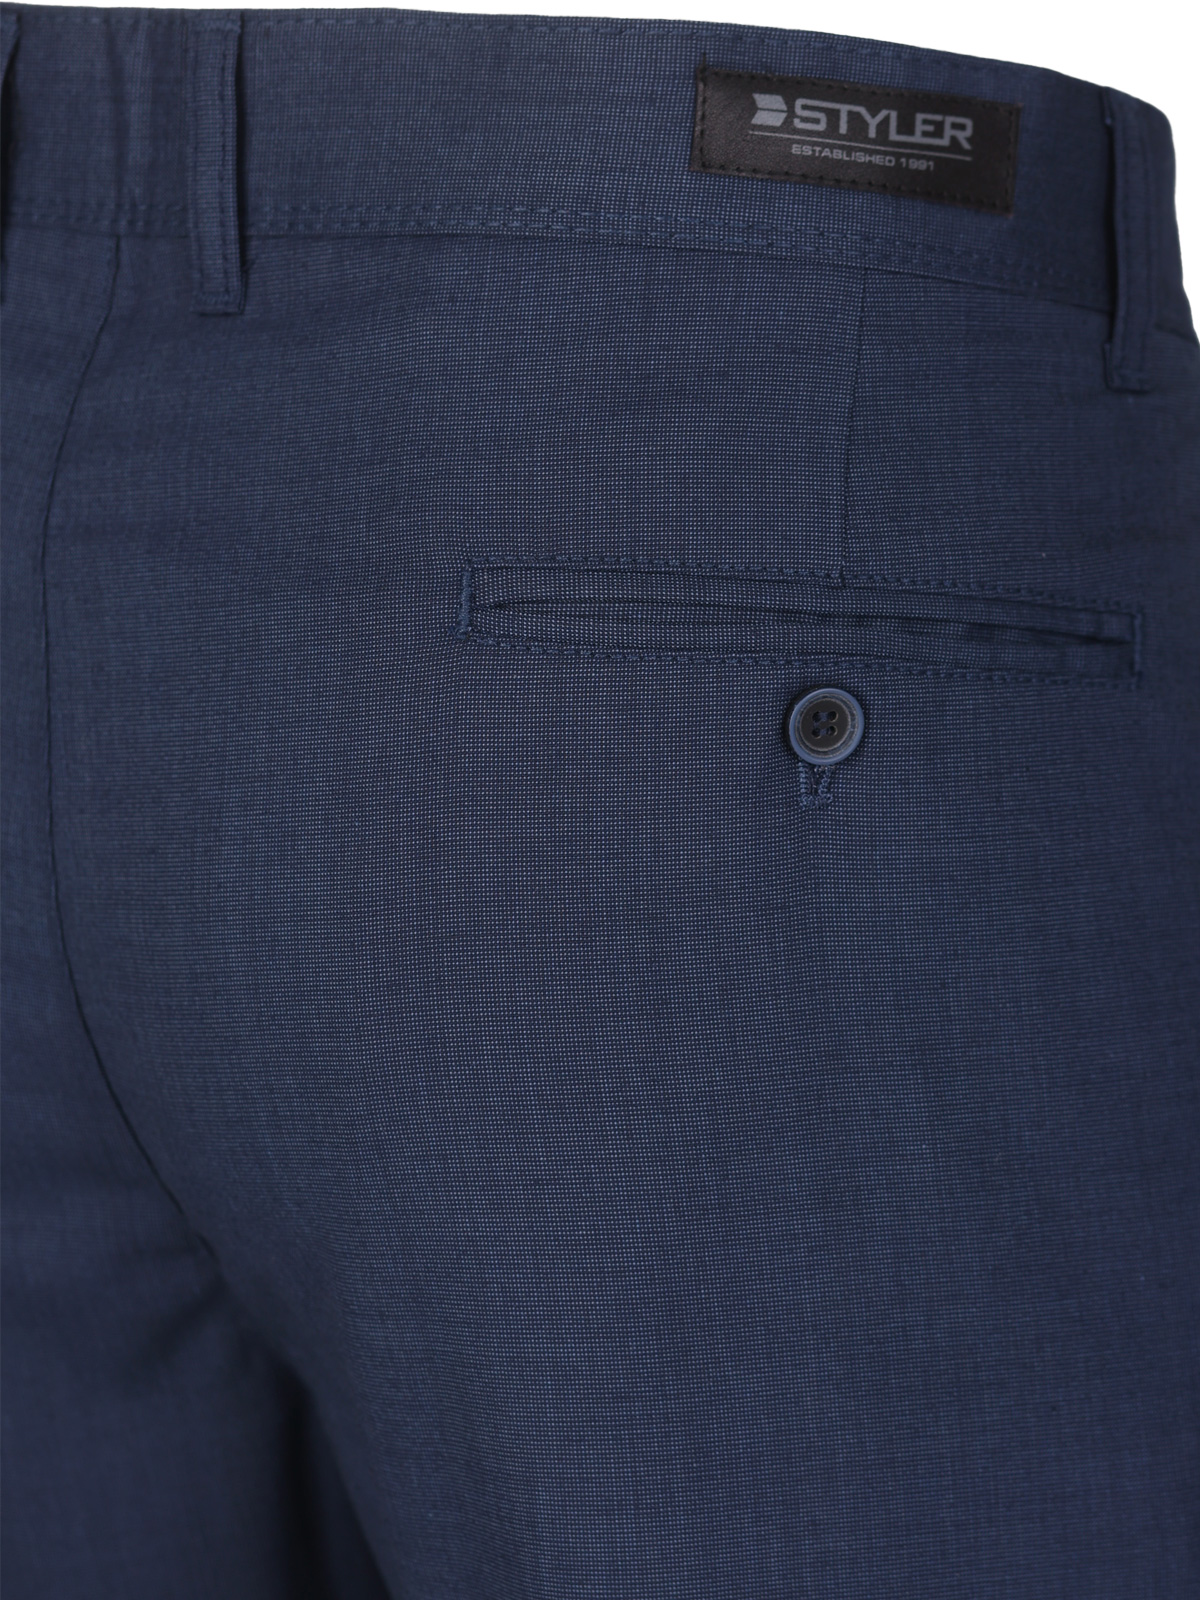 Σπορκομψό παντελόνι σε μπλε χρώμα - 60310 € 66.37 img3